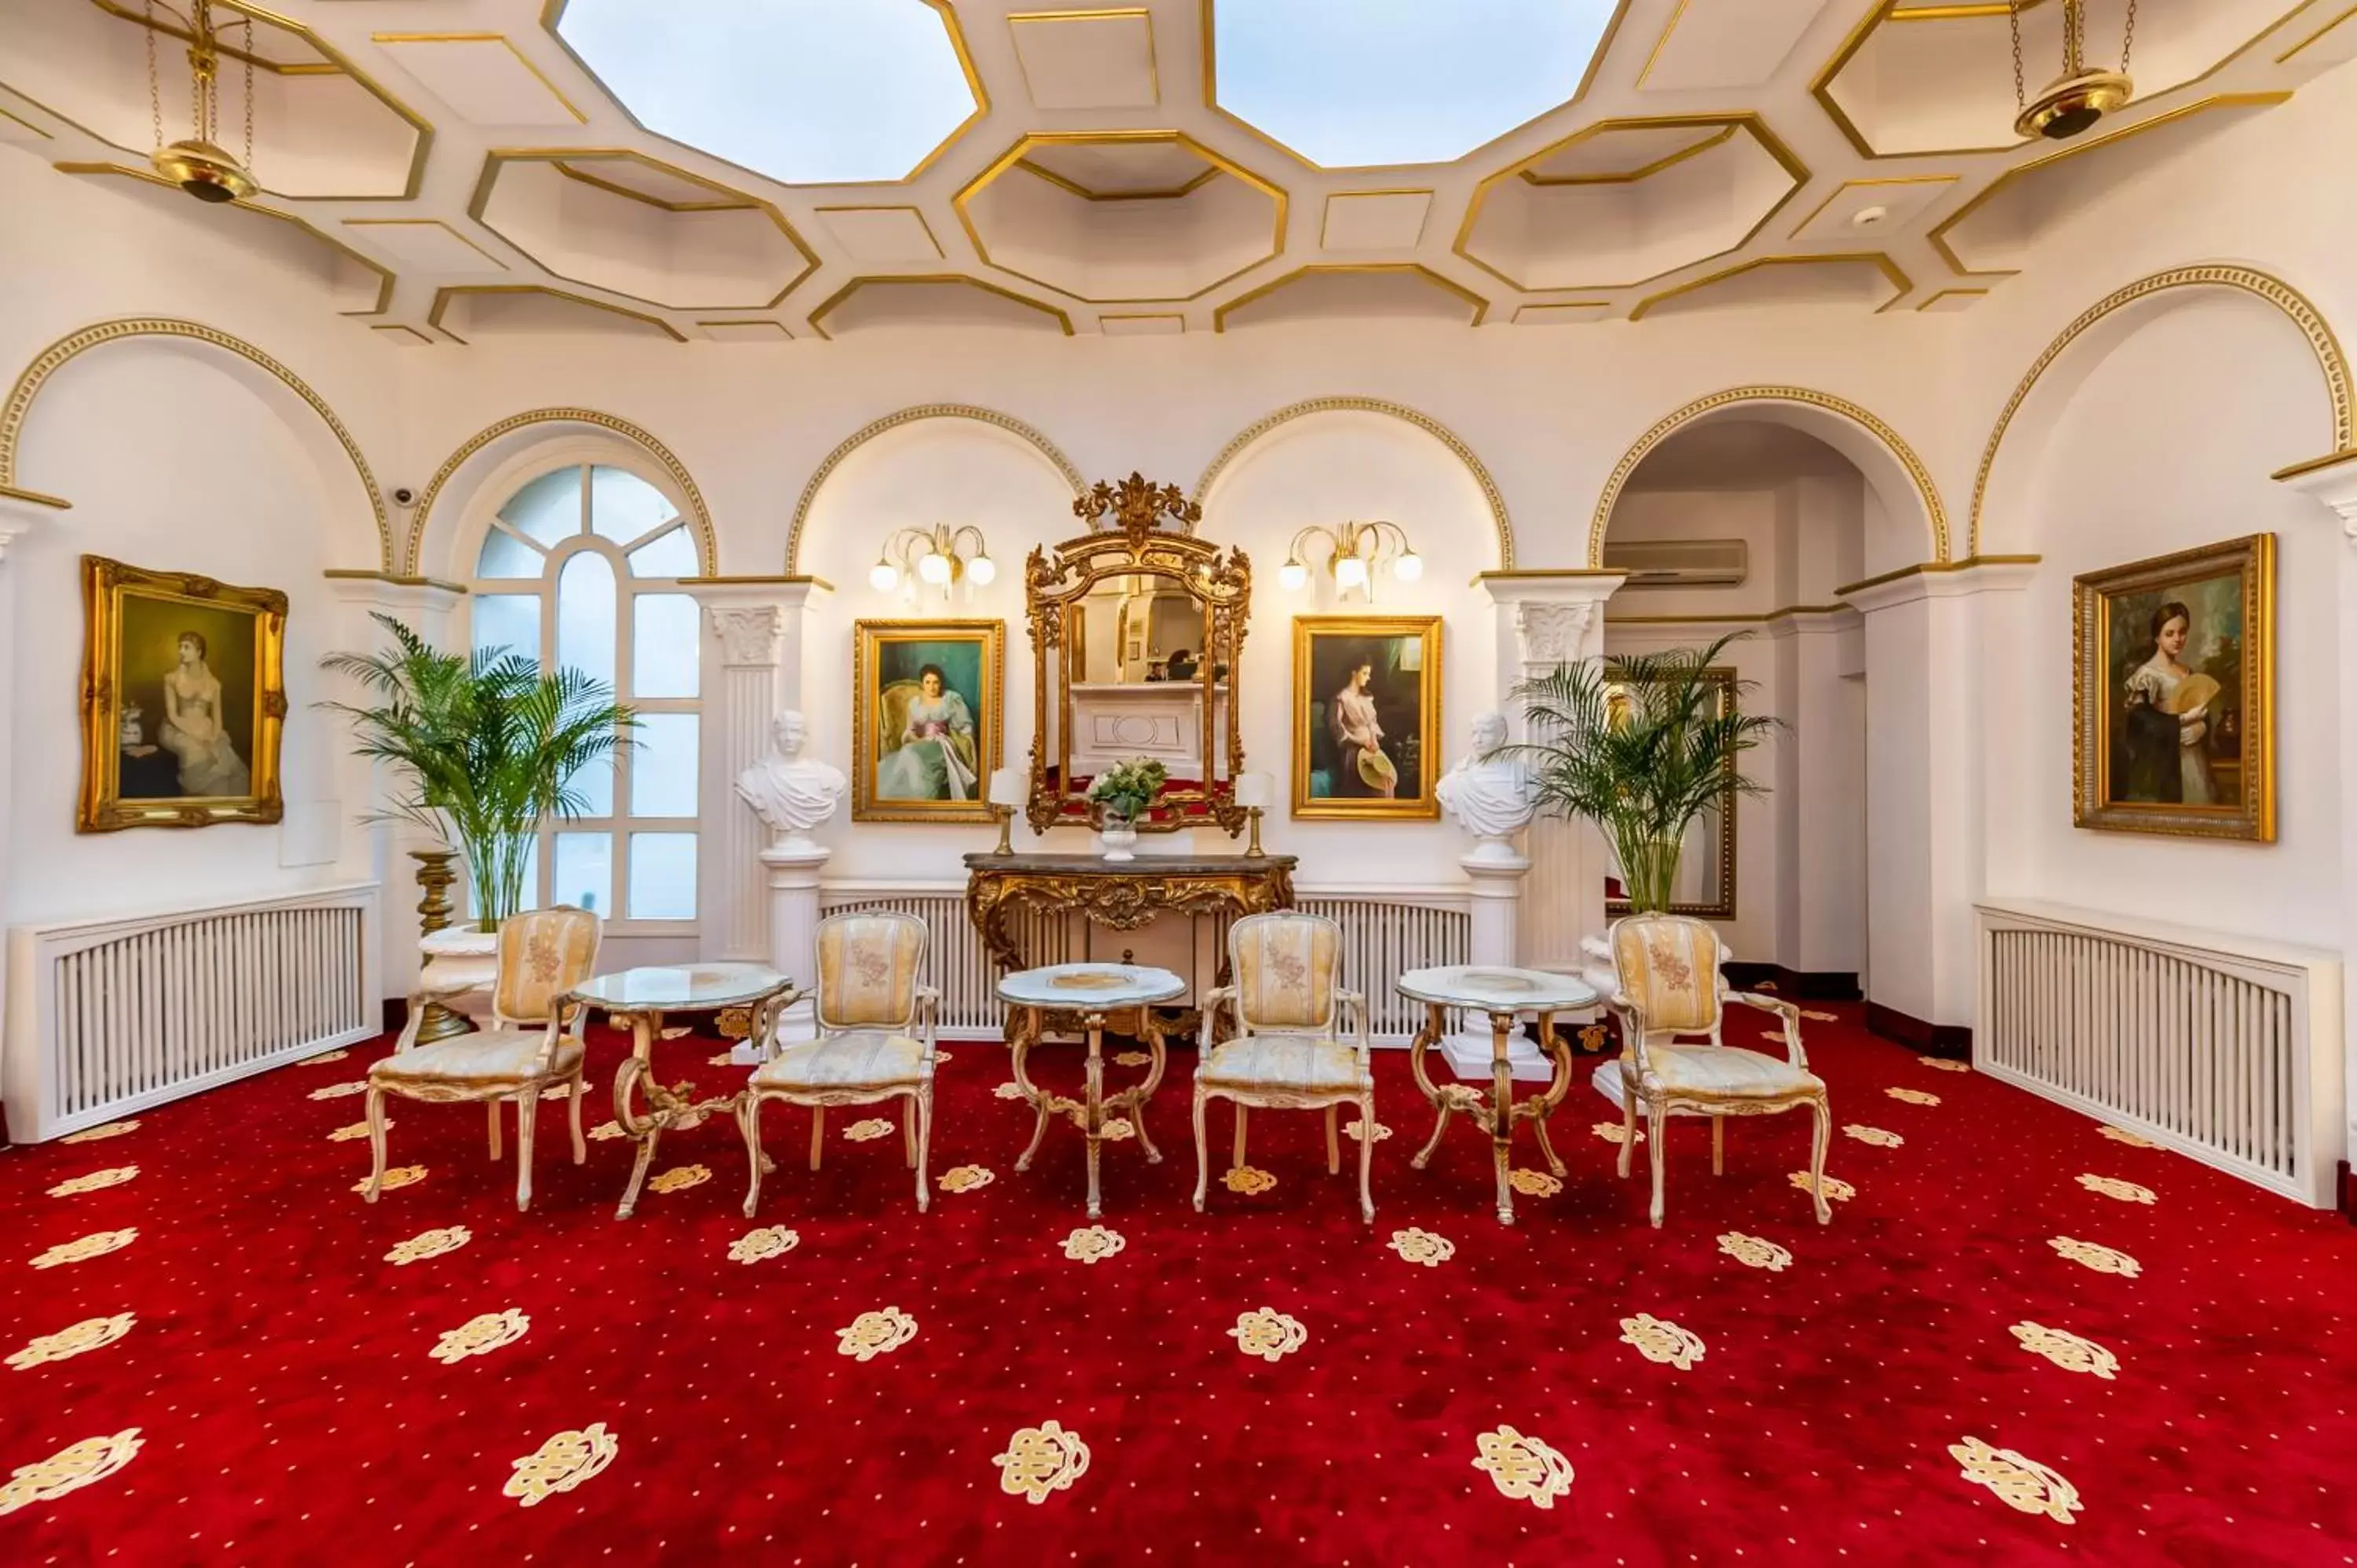 Lobby or reception in Hotel Imparatul Romanilor